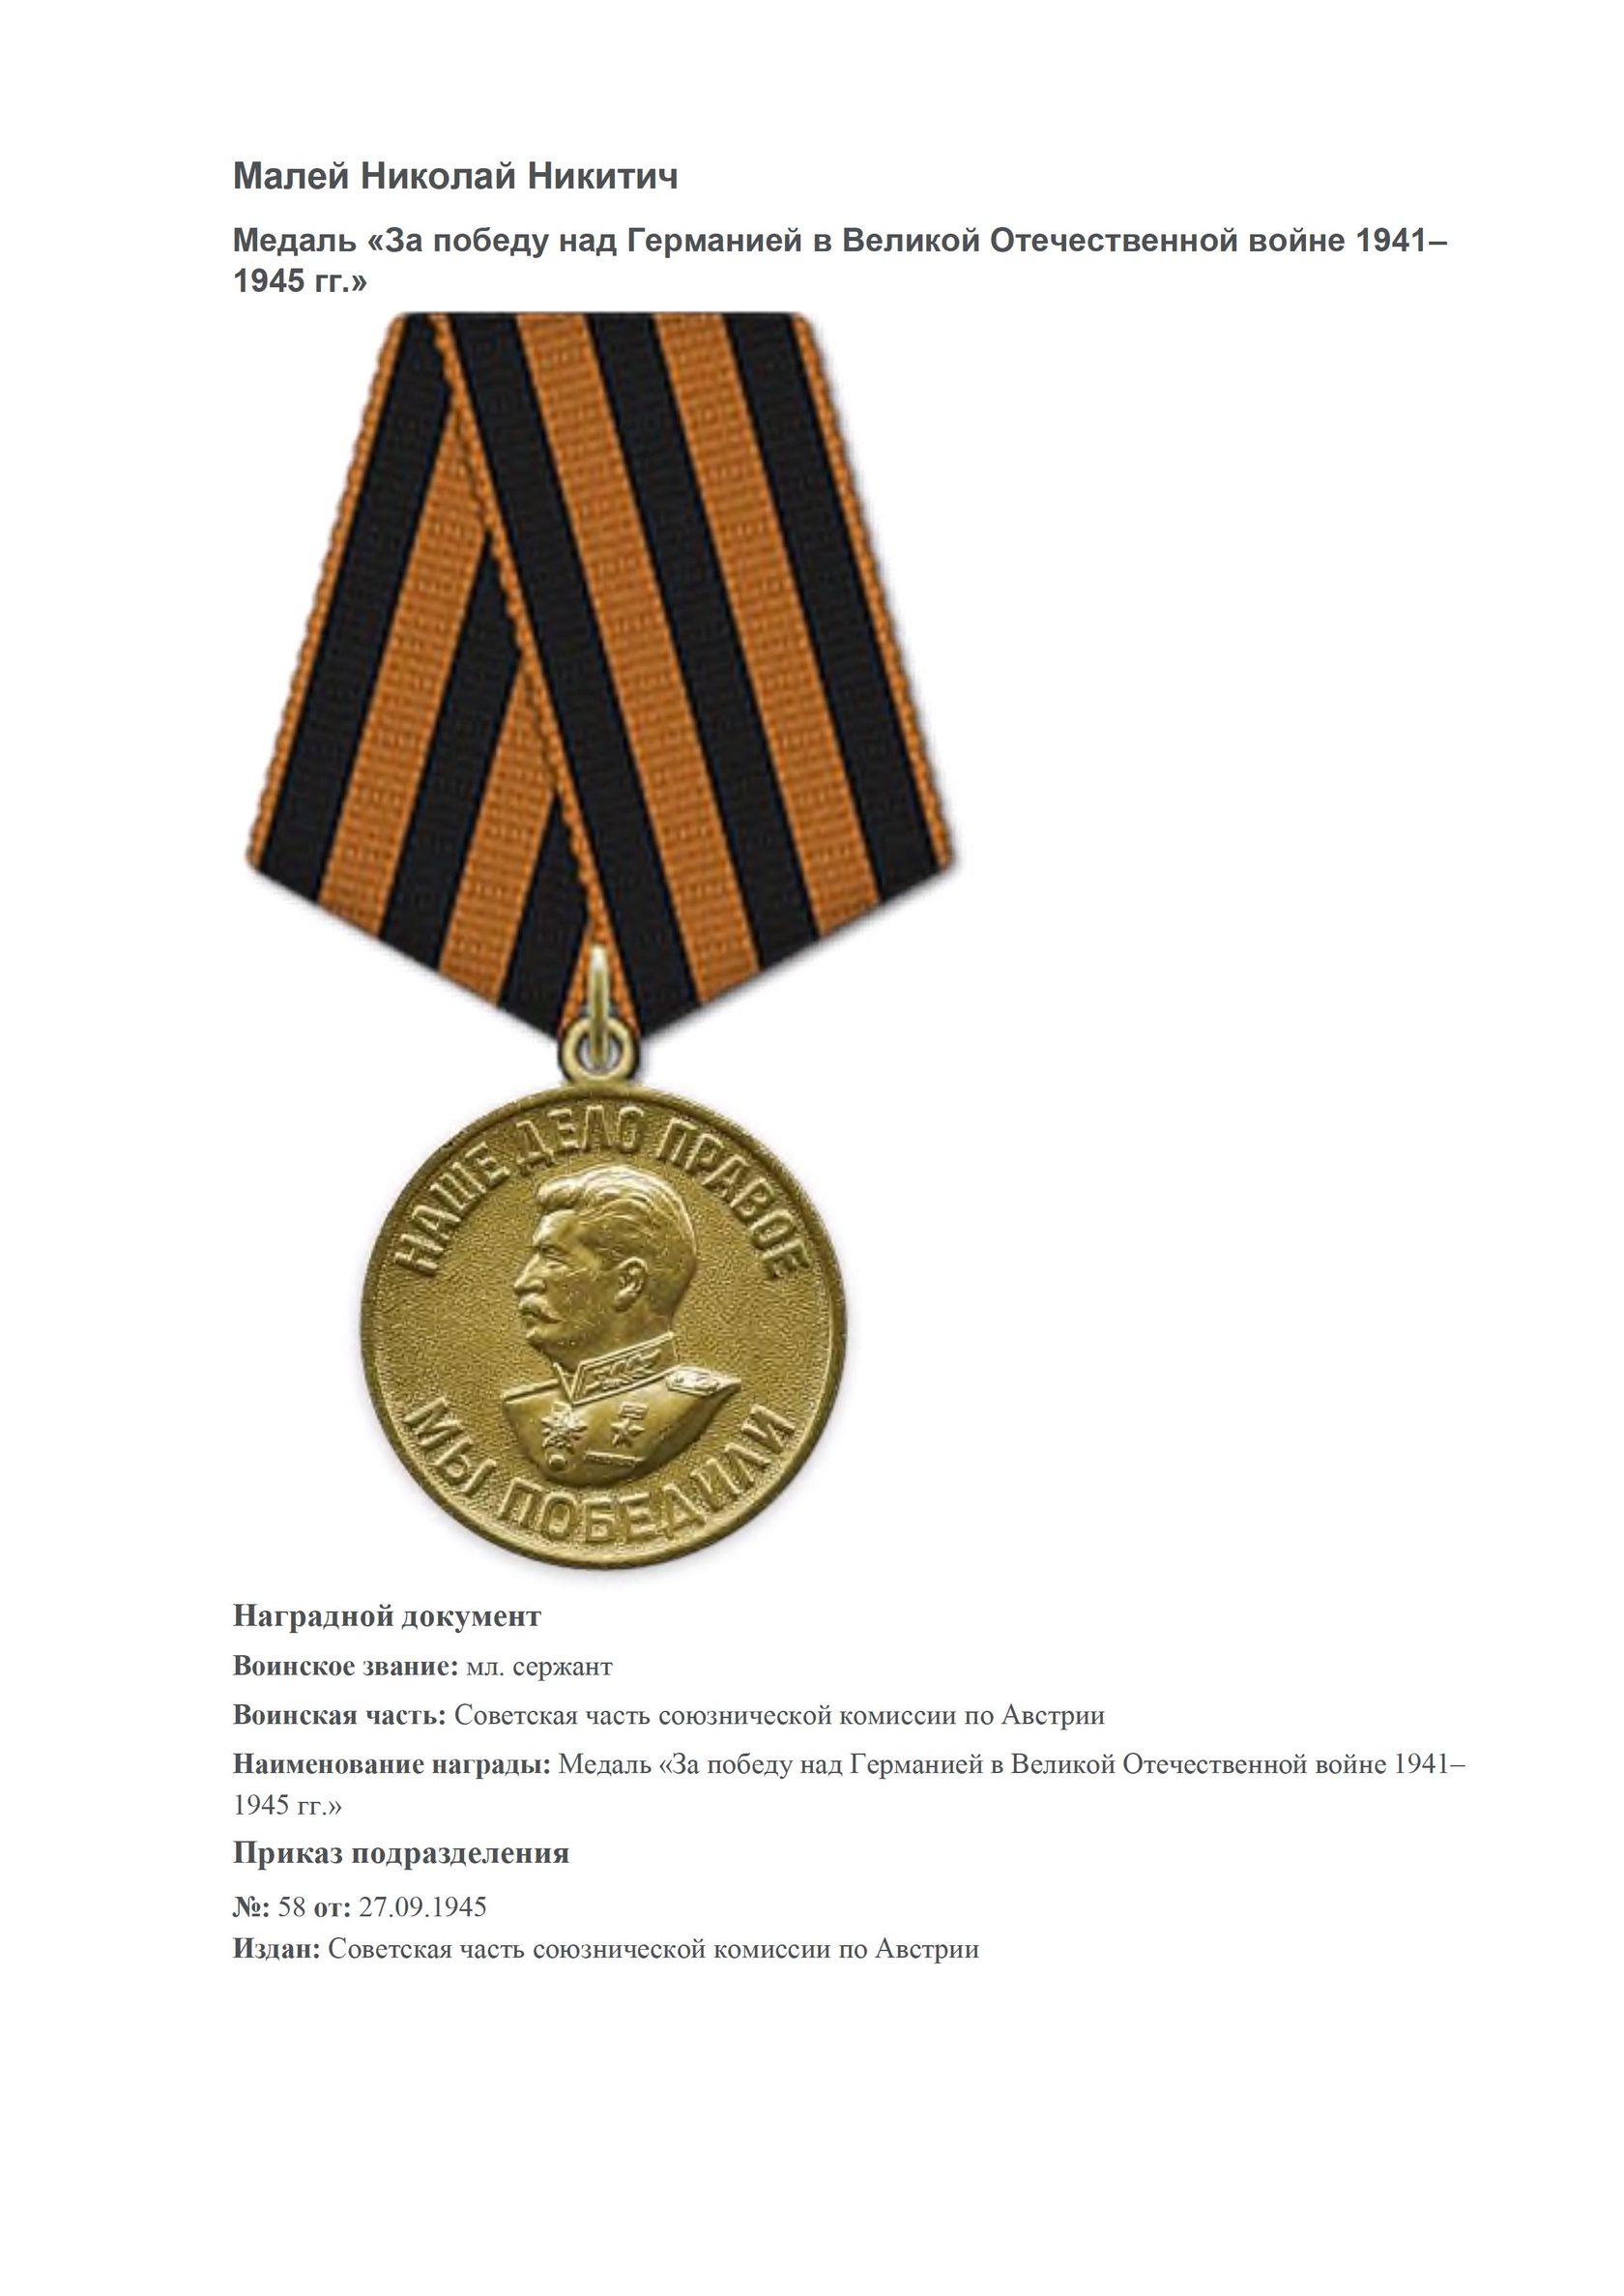 орден славы и медаль за победу над германией